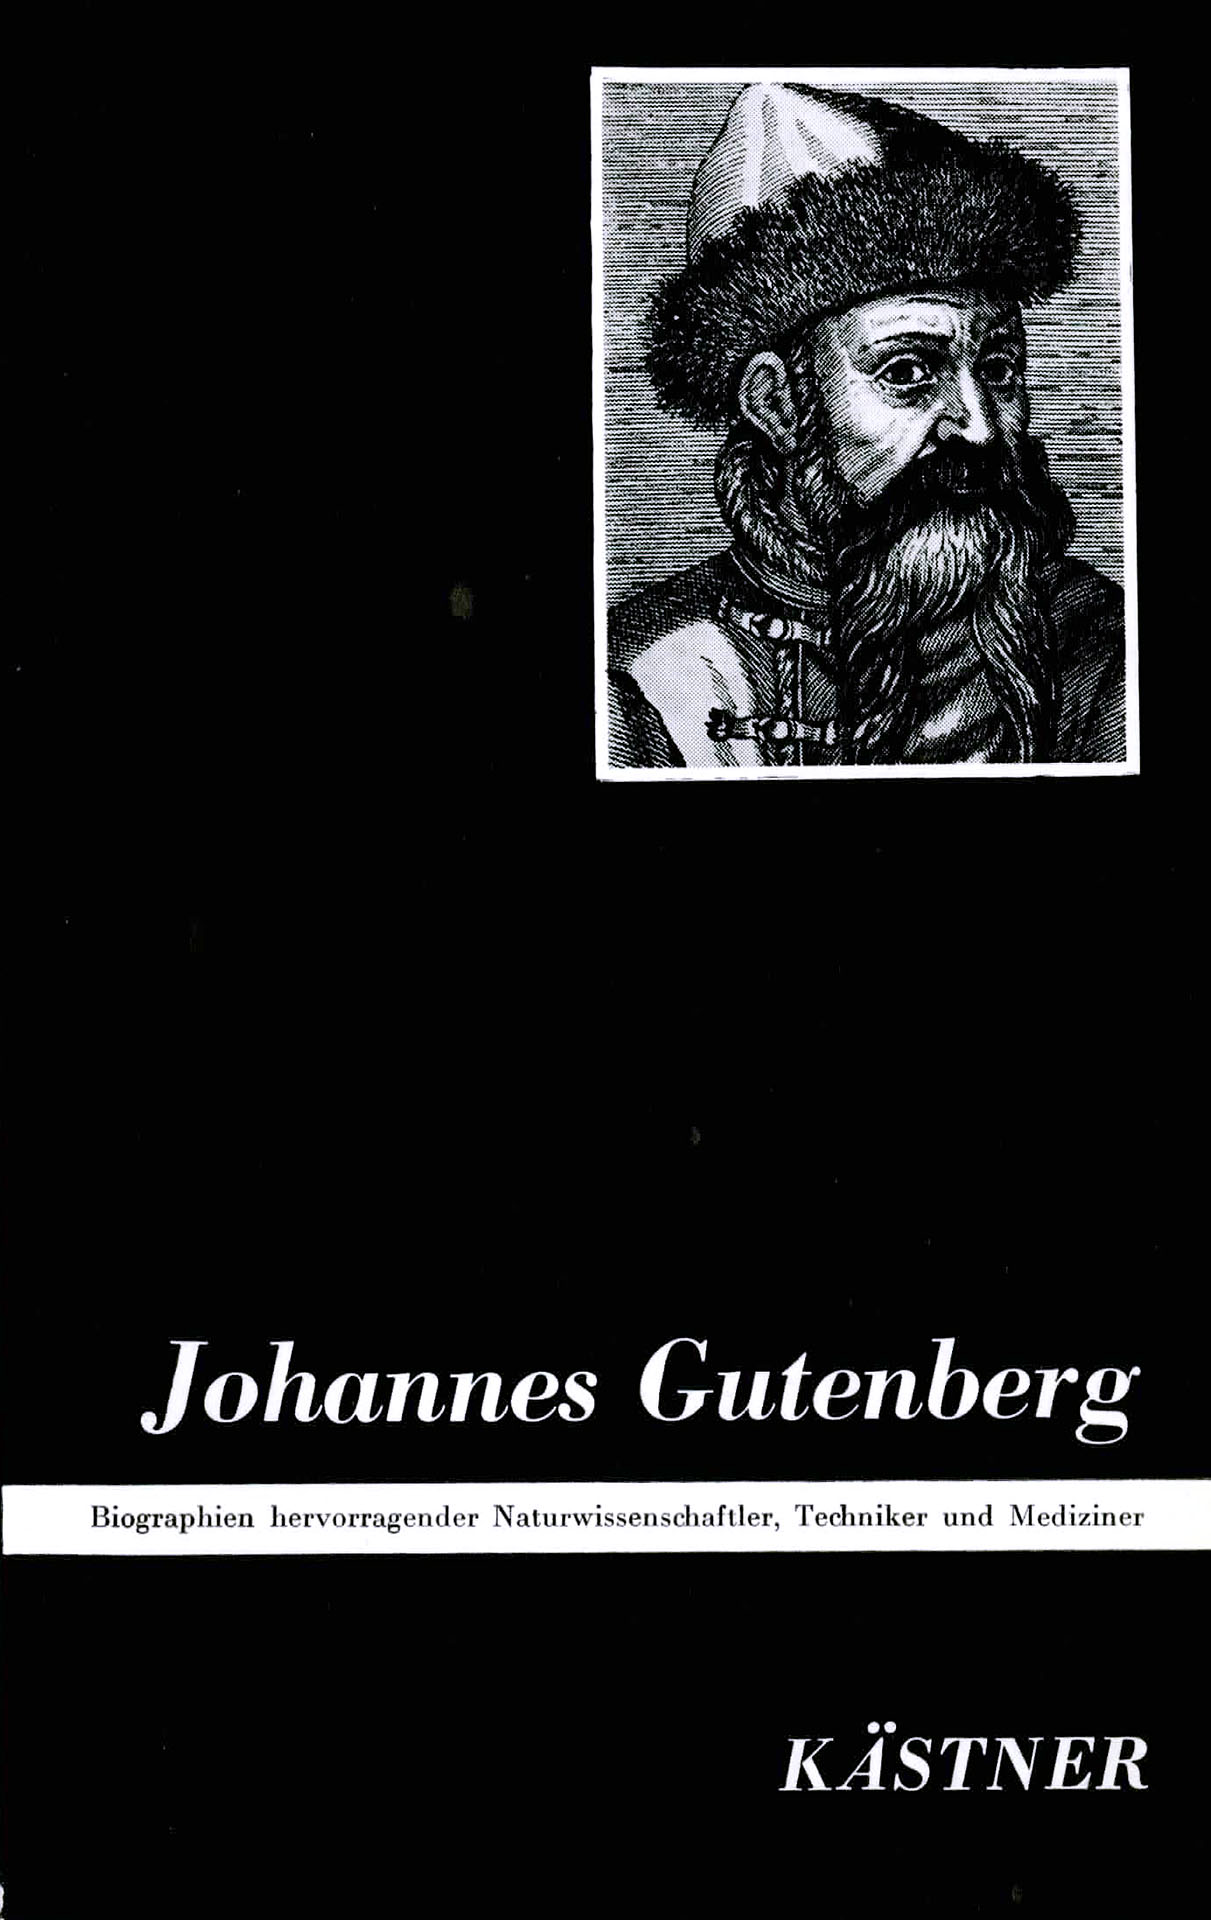 Johannes Gutenberg - Kästner, Dr. Ingrid